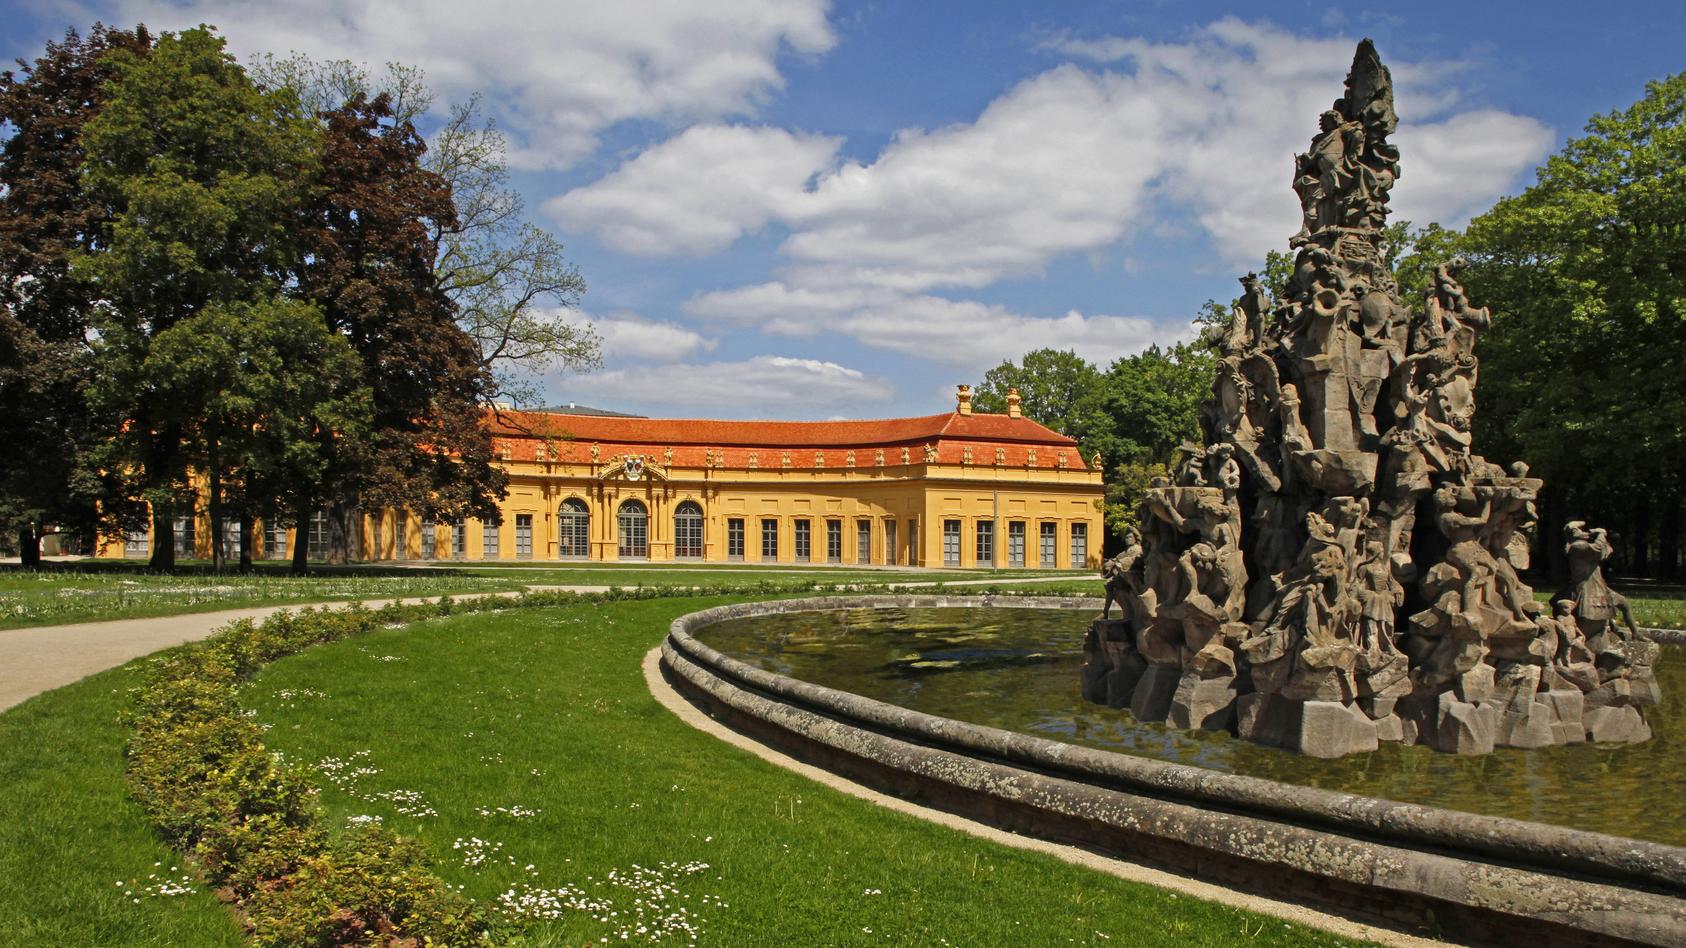 Schlossgarten, Hugenottenbrunnen, Orangerie, Erlangen, Bayern, Deutschland